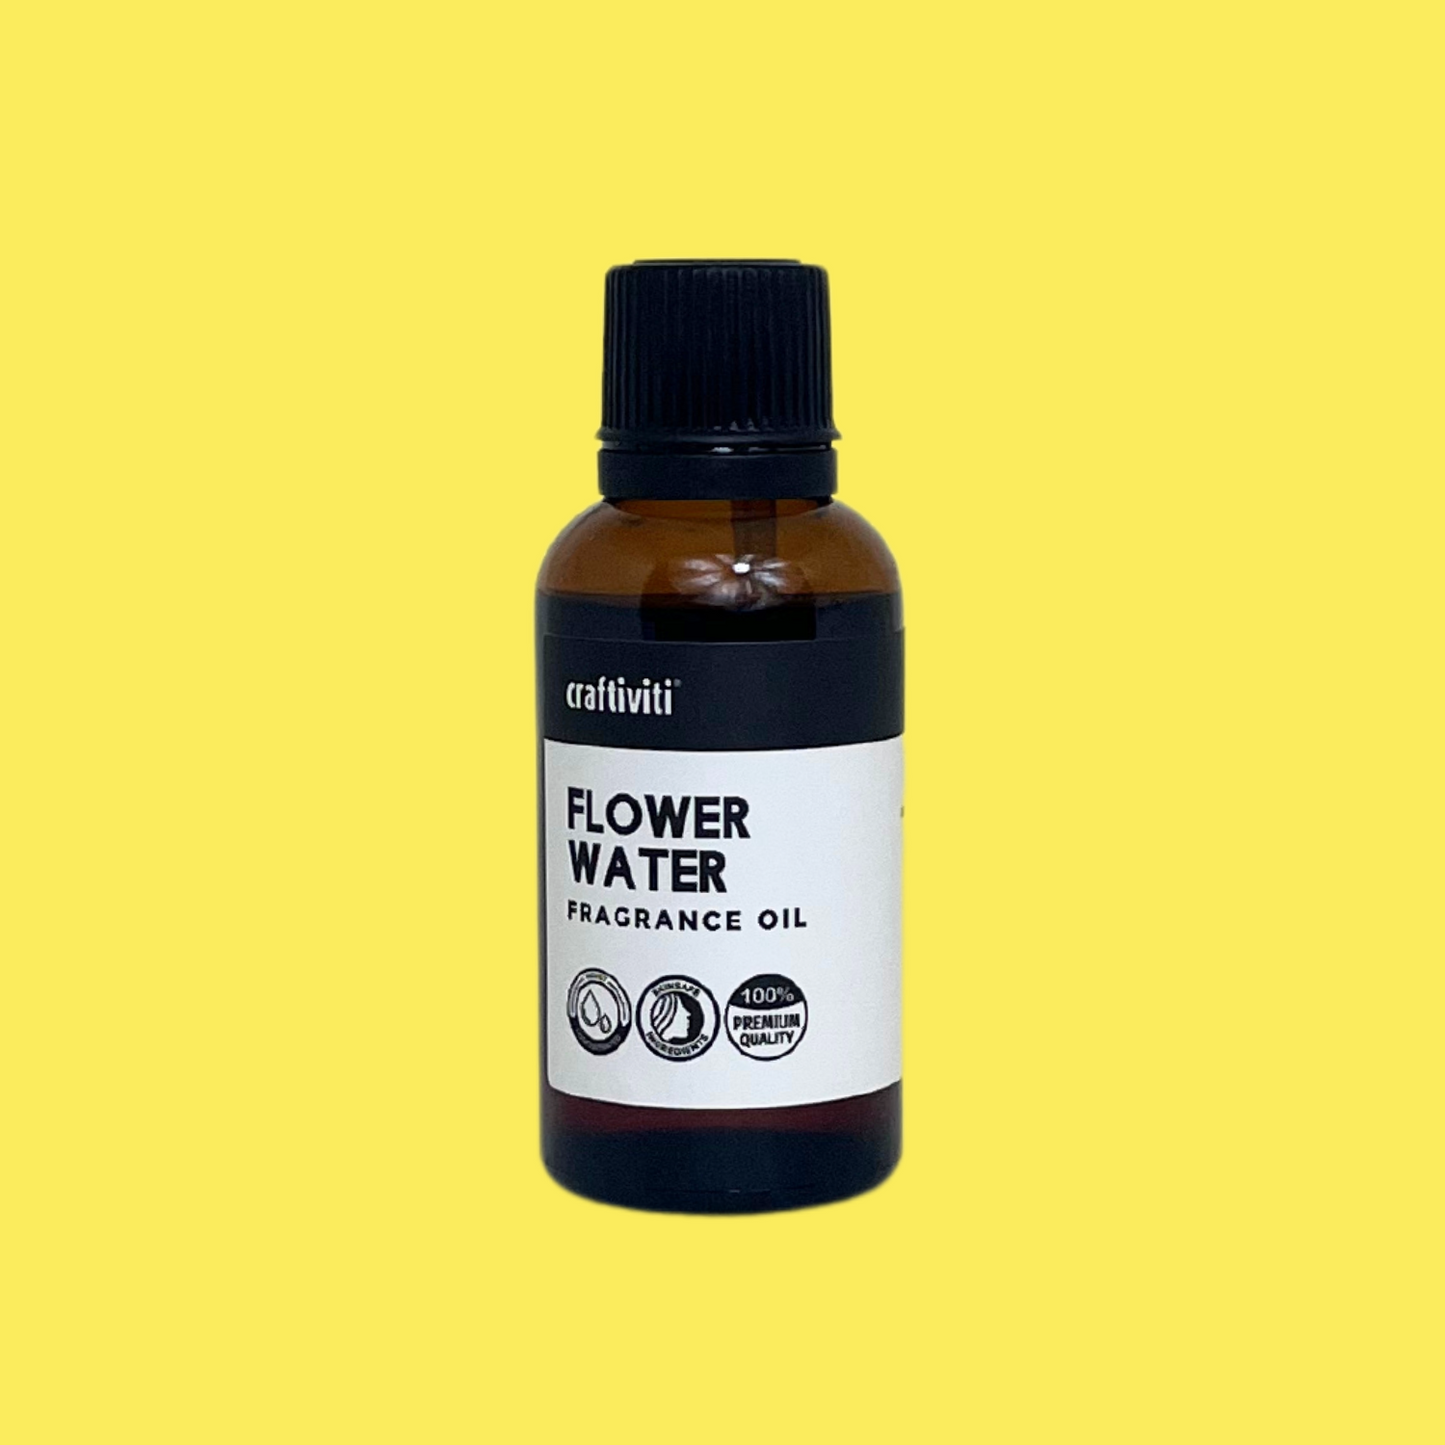 Flower Water Fragrance Oil